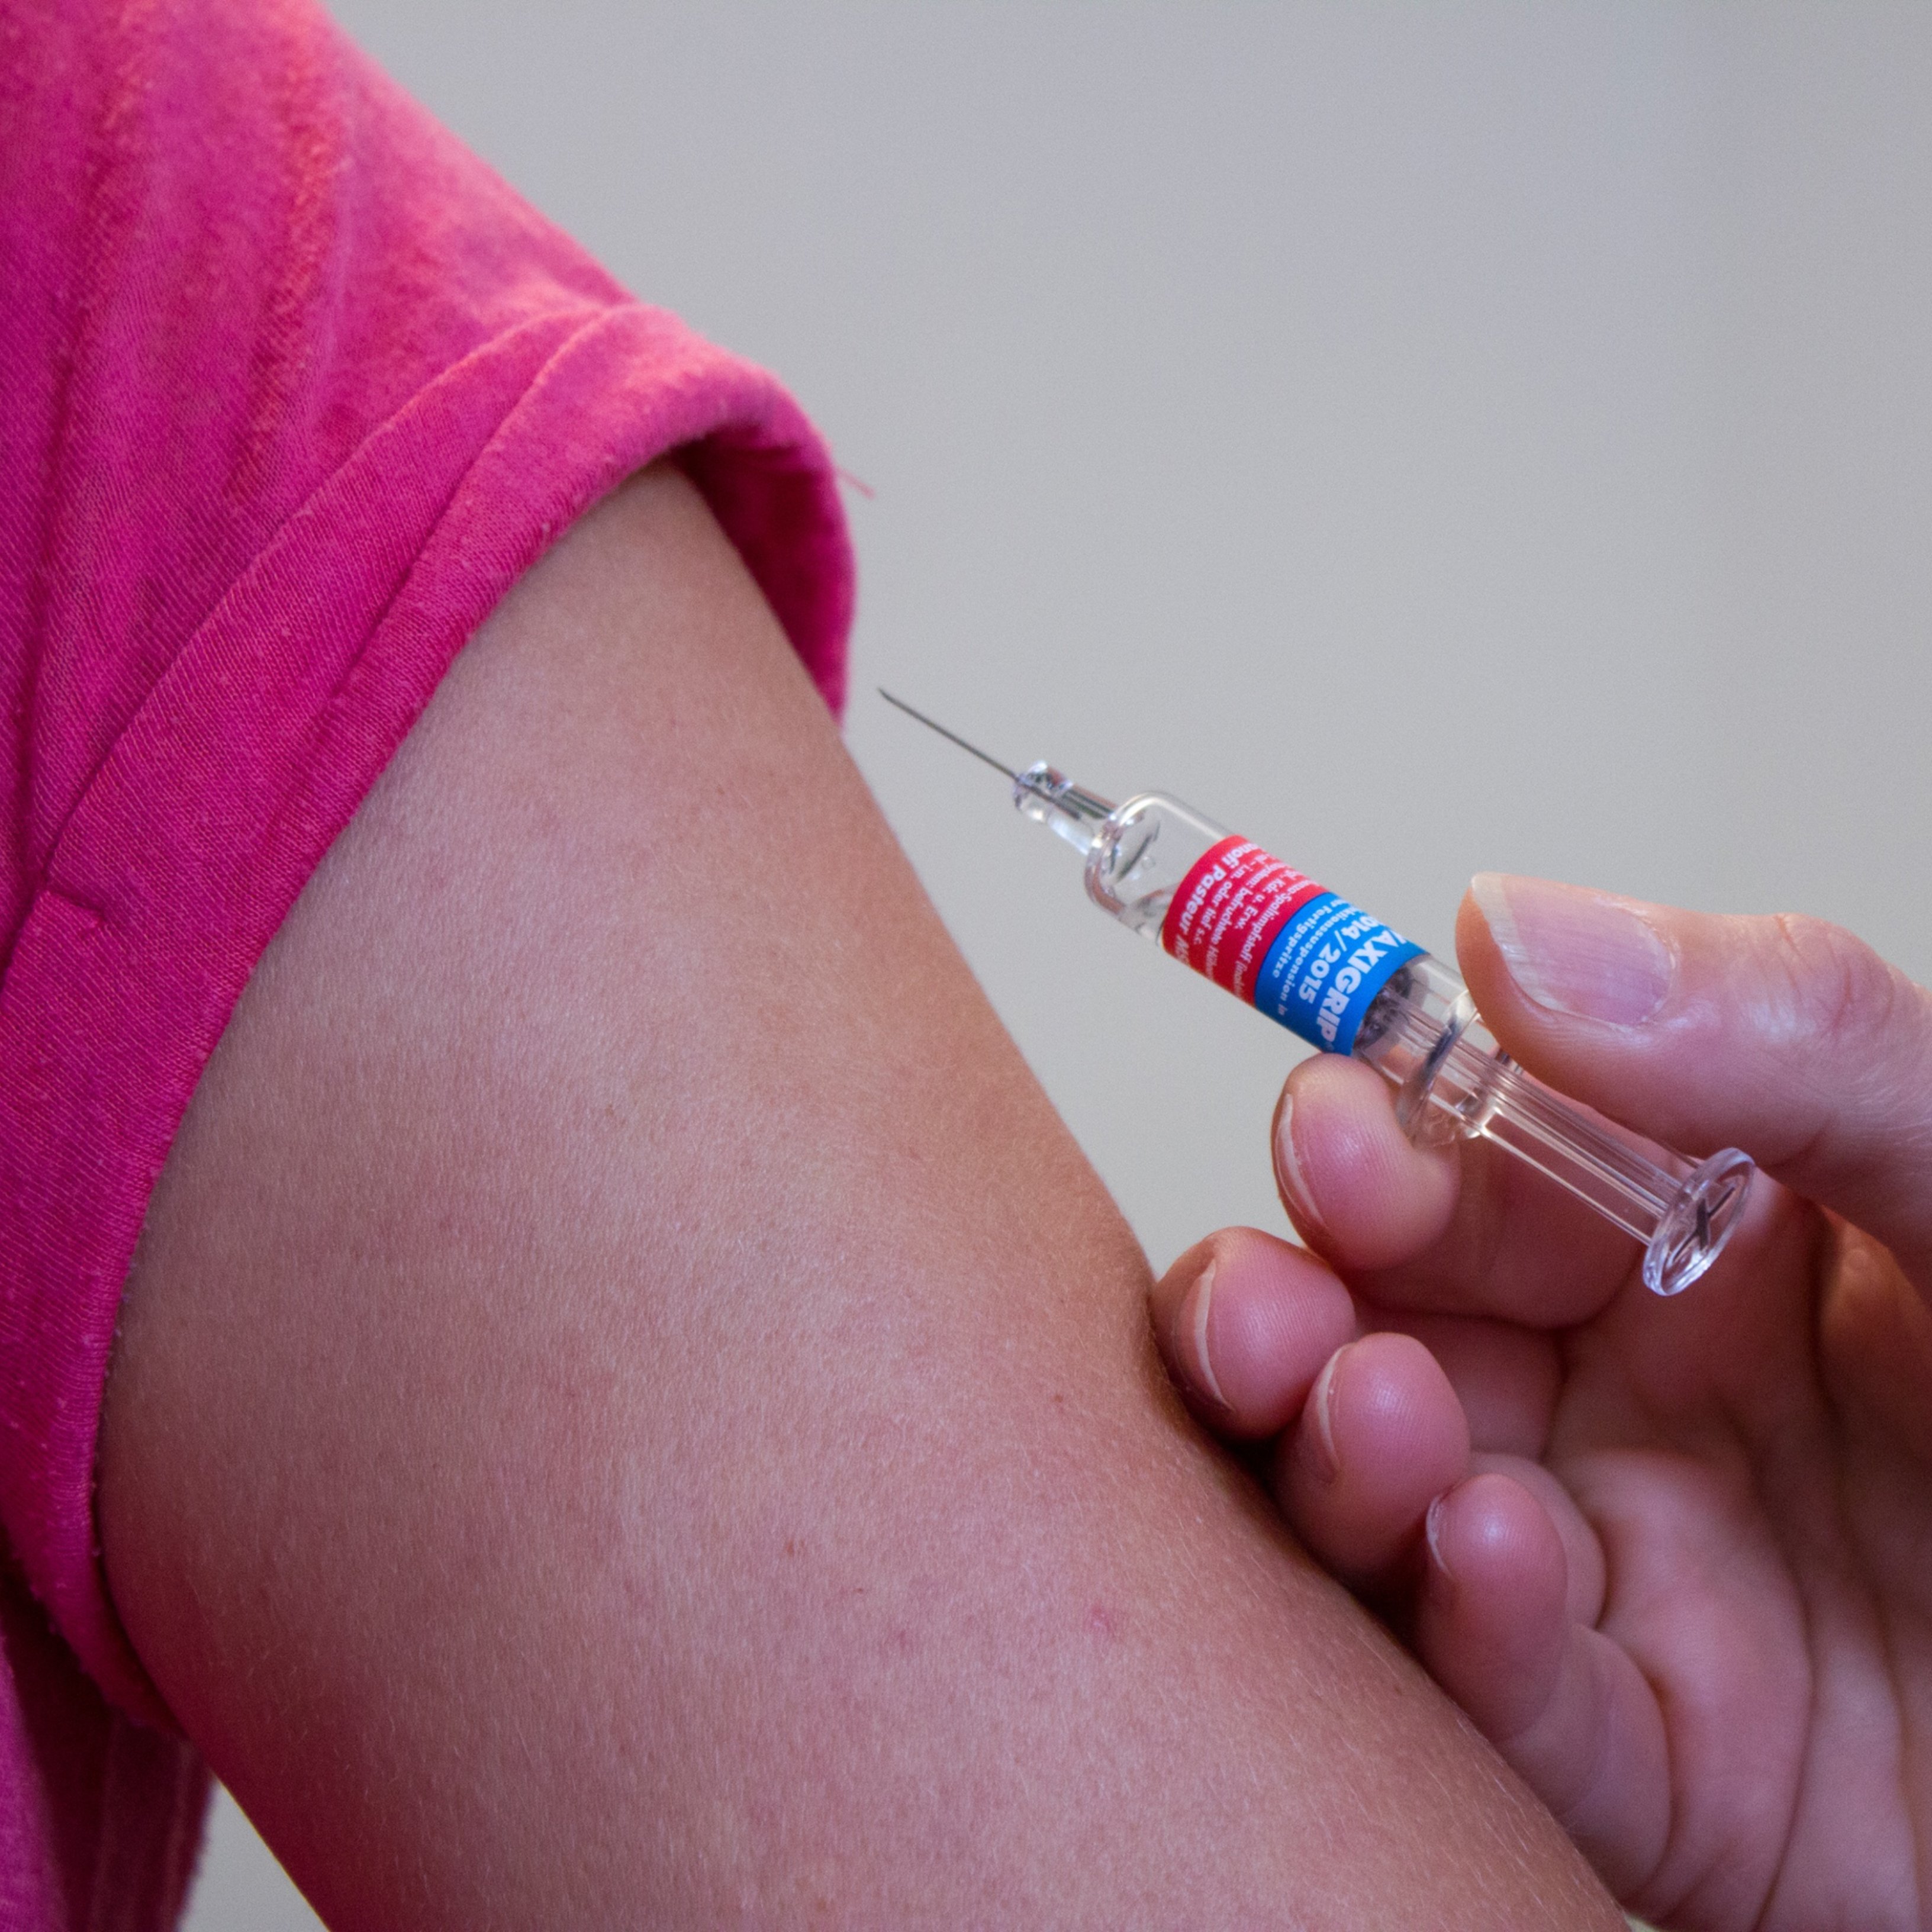 La vacuna americana de Moderna entra en fase 3: es testarà en 30.000 persones